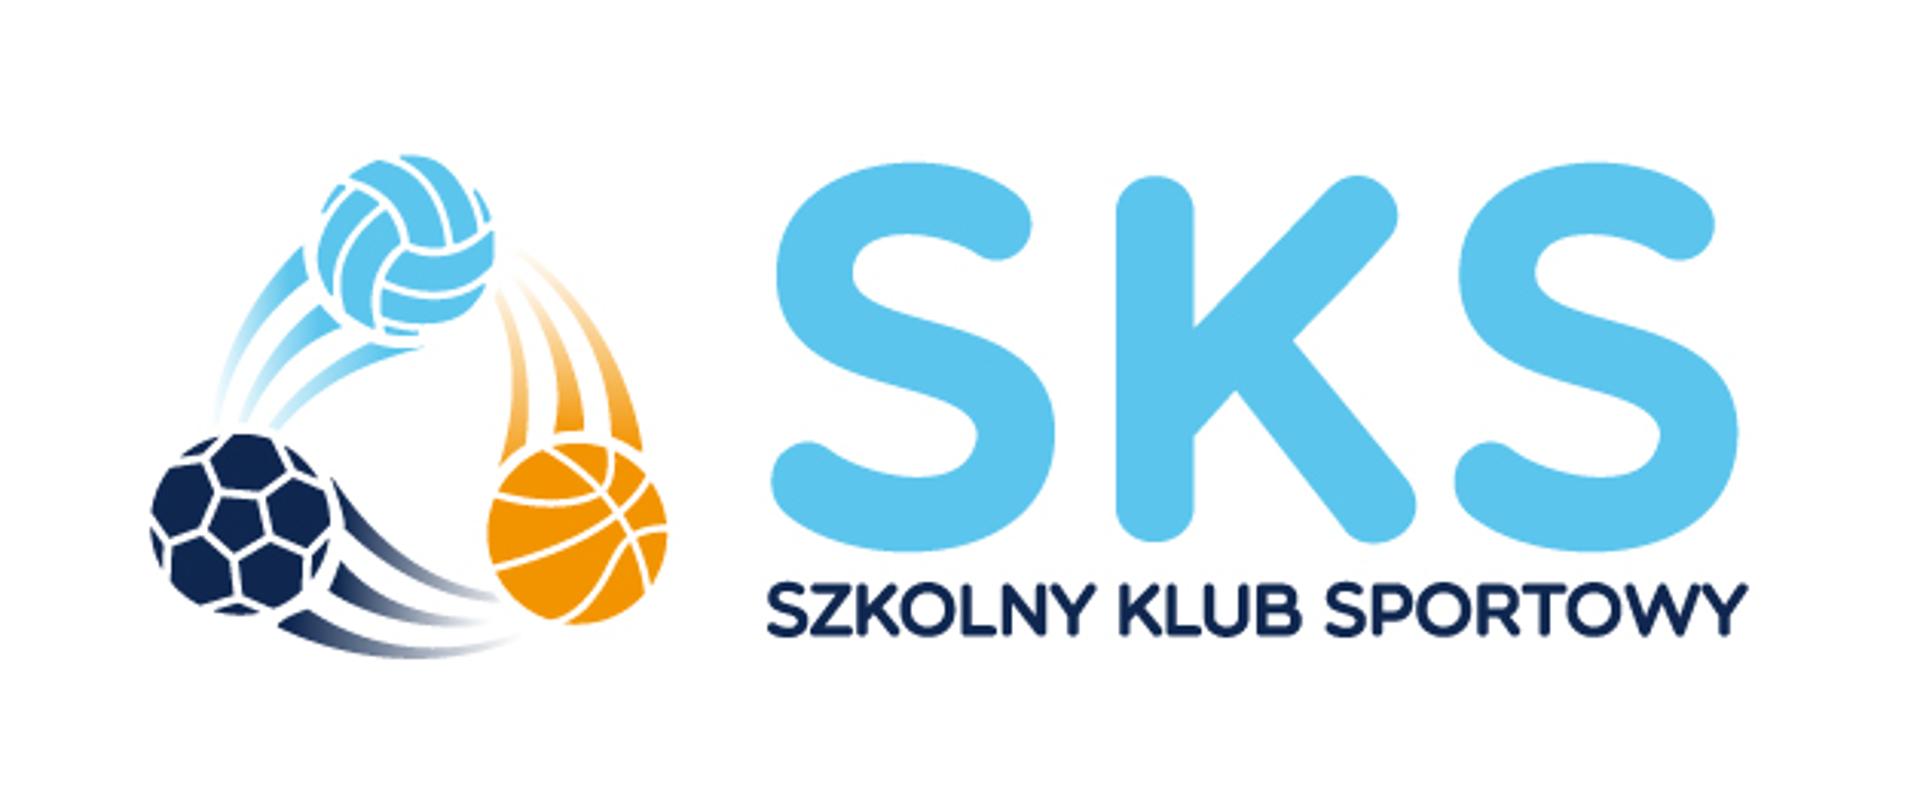 Piłki i napis SKS Szkolny Klub Sportowy na białym tle